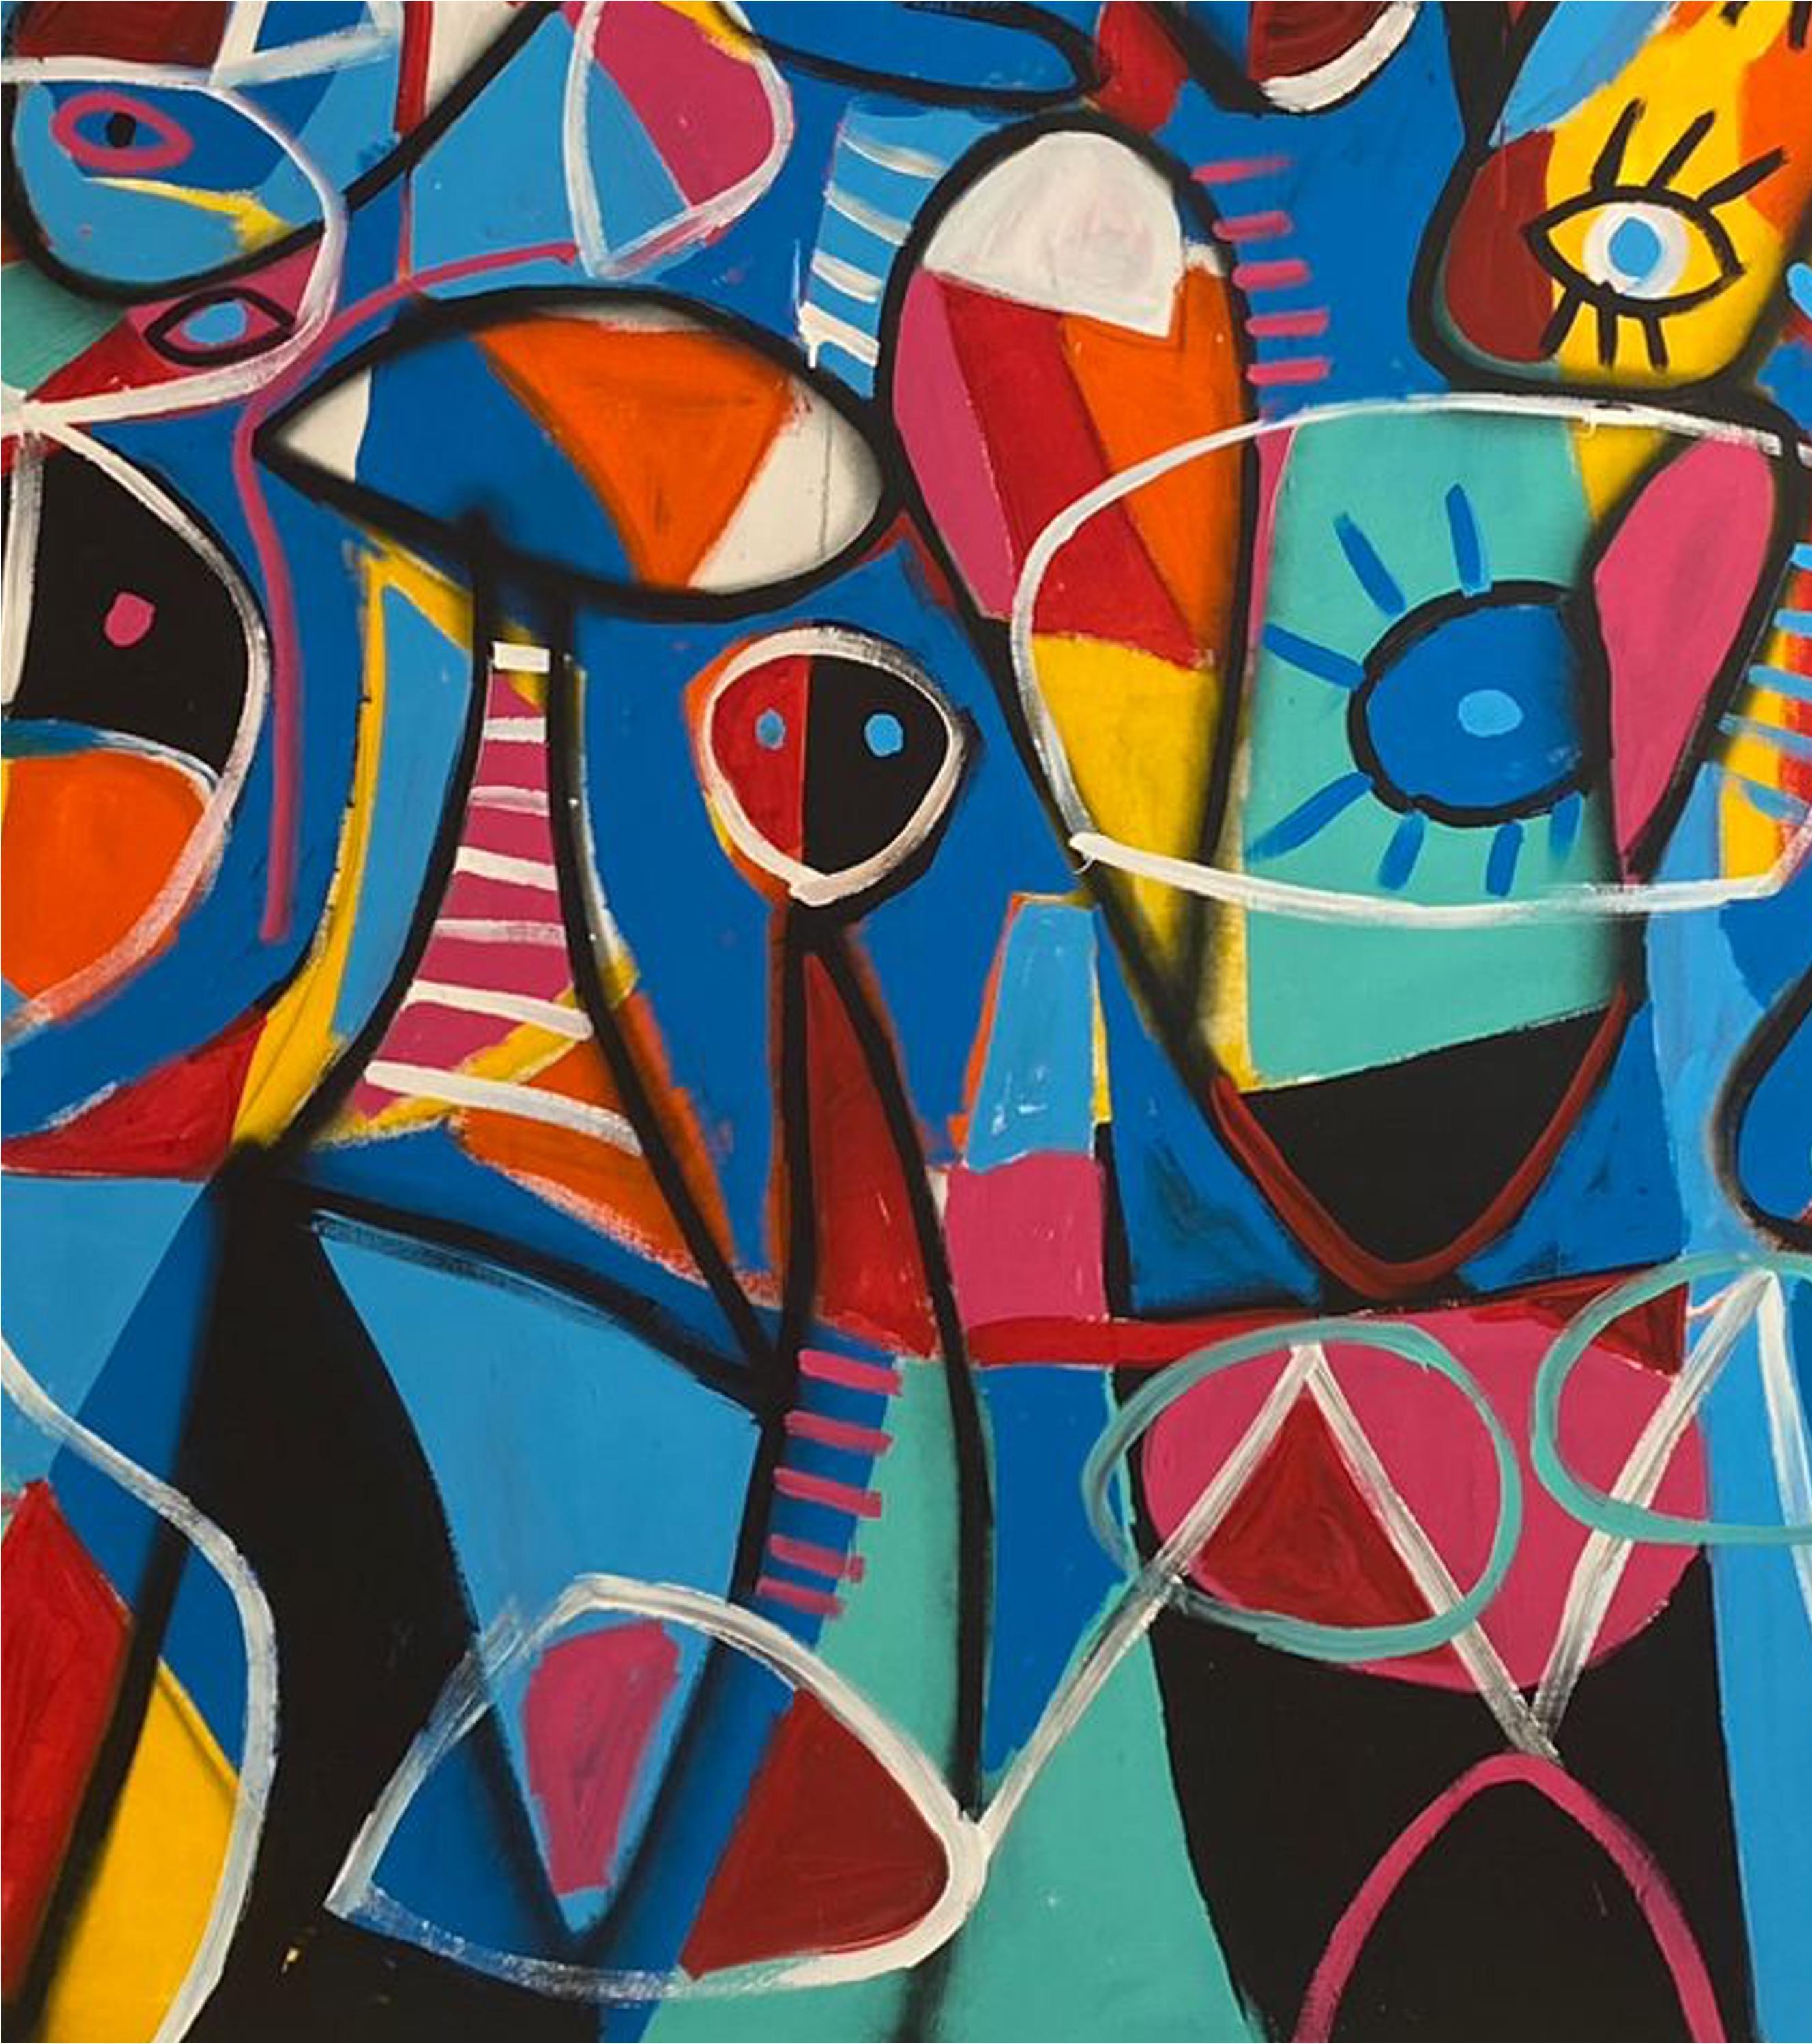 Art contemporain, peinture abstraite
Acrylique sur toile
205x330cm
Signé 
LIVRAISON GRATUITE ROLLE




A propos de l'artiste
Enrique Pichardo (Mexico, 1973) est diplômé de l'Escuela Nacional de Pintura, Escultura y Grabado (ENPEG) 